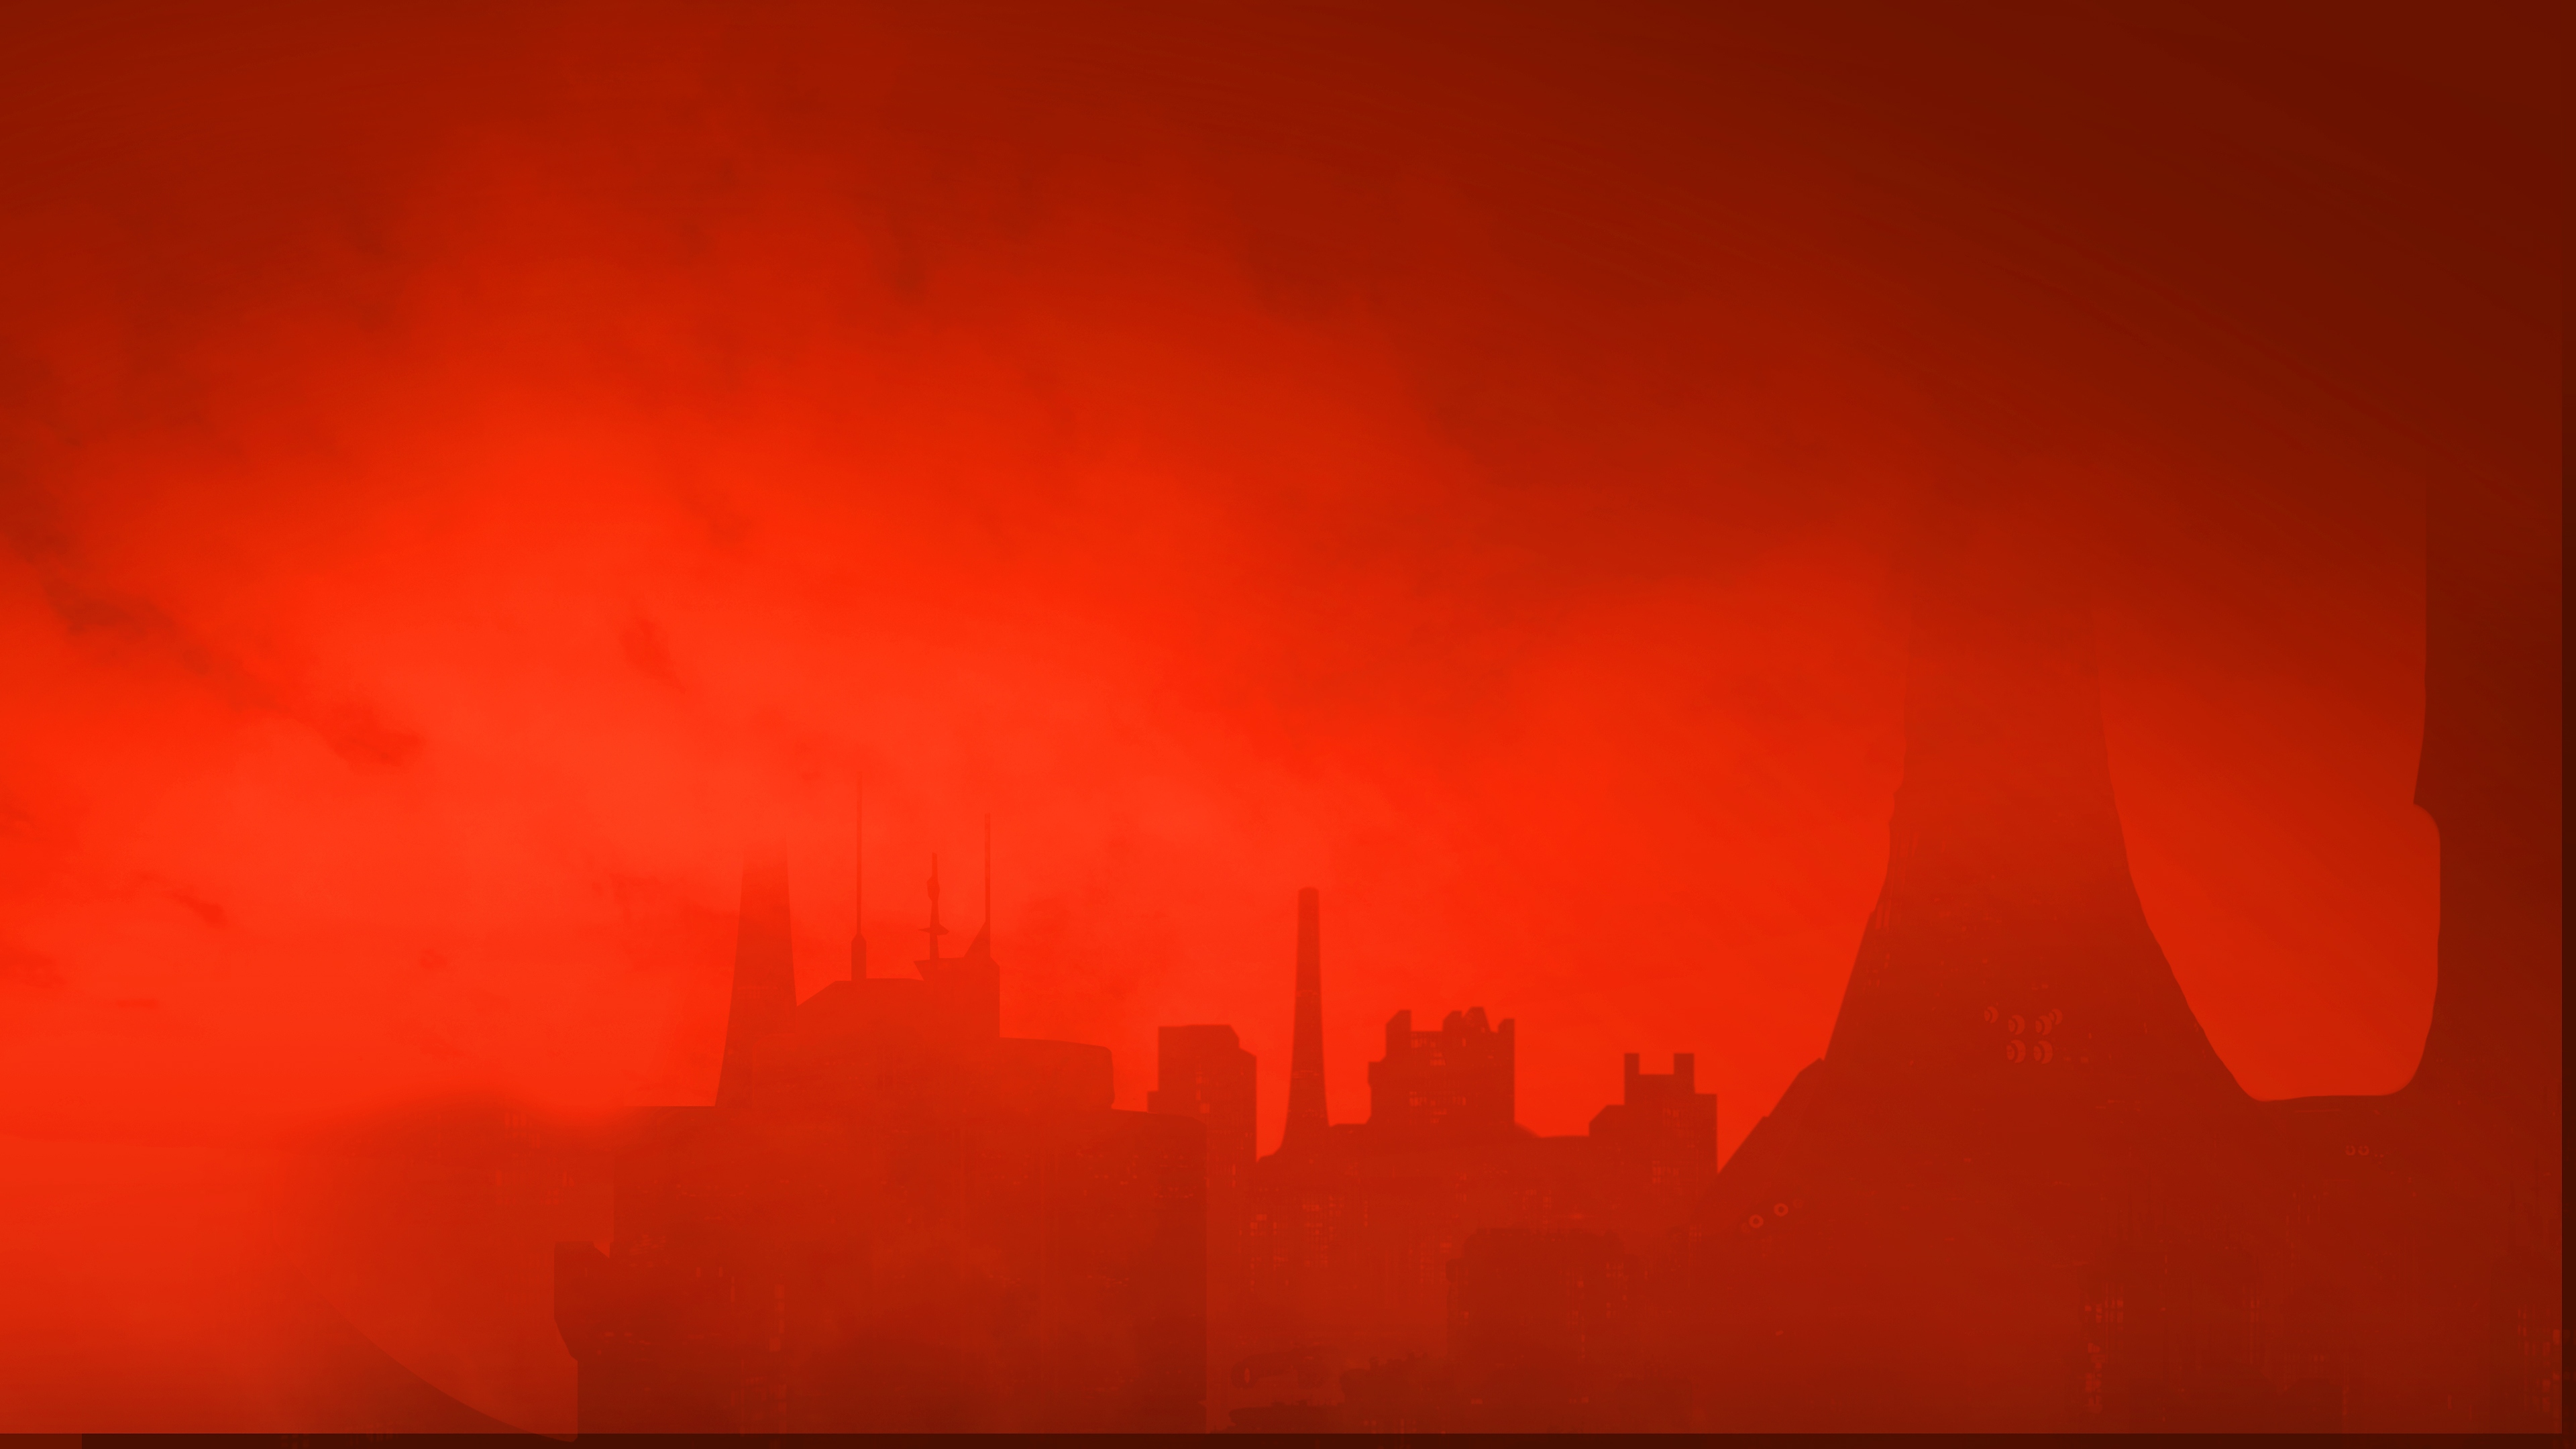 The Ascent-baggrundsbillede – en skyline under en rød himmel